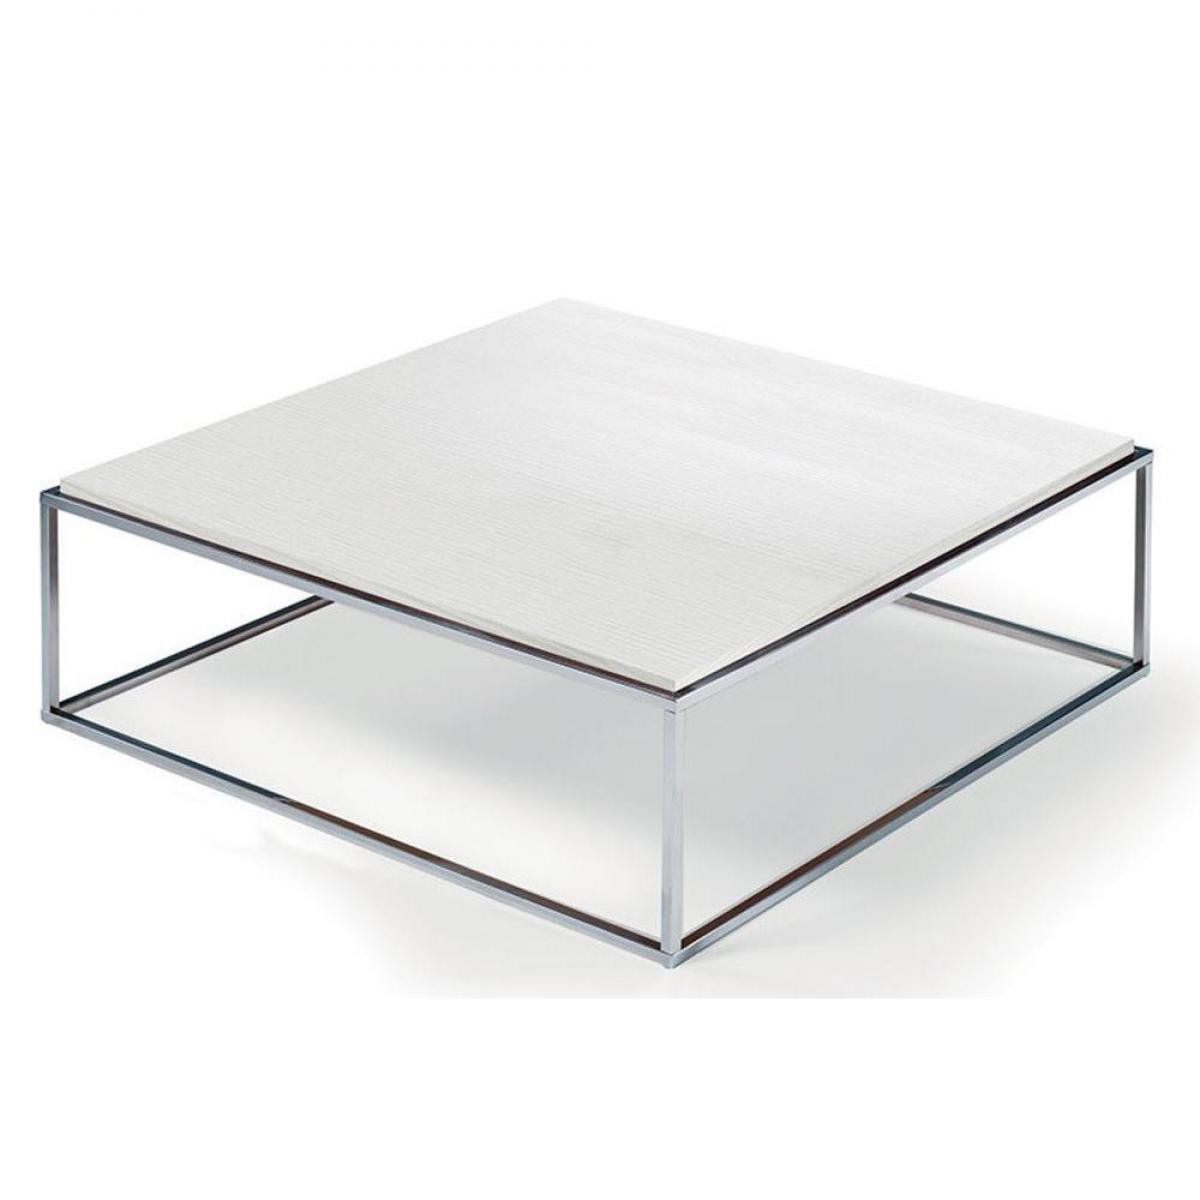 Inside 75 - Table basse carrée MIMI XL blanc céruse structure acier inoxydable poli - Tables à manger